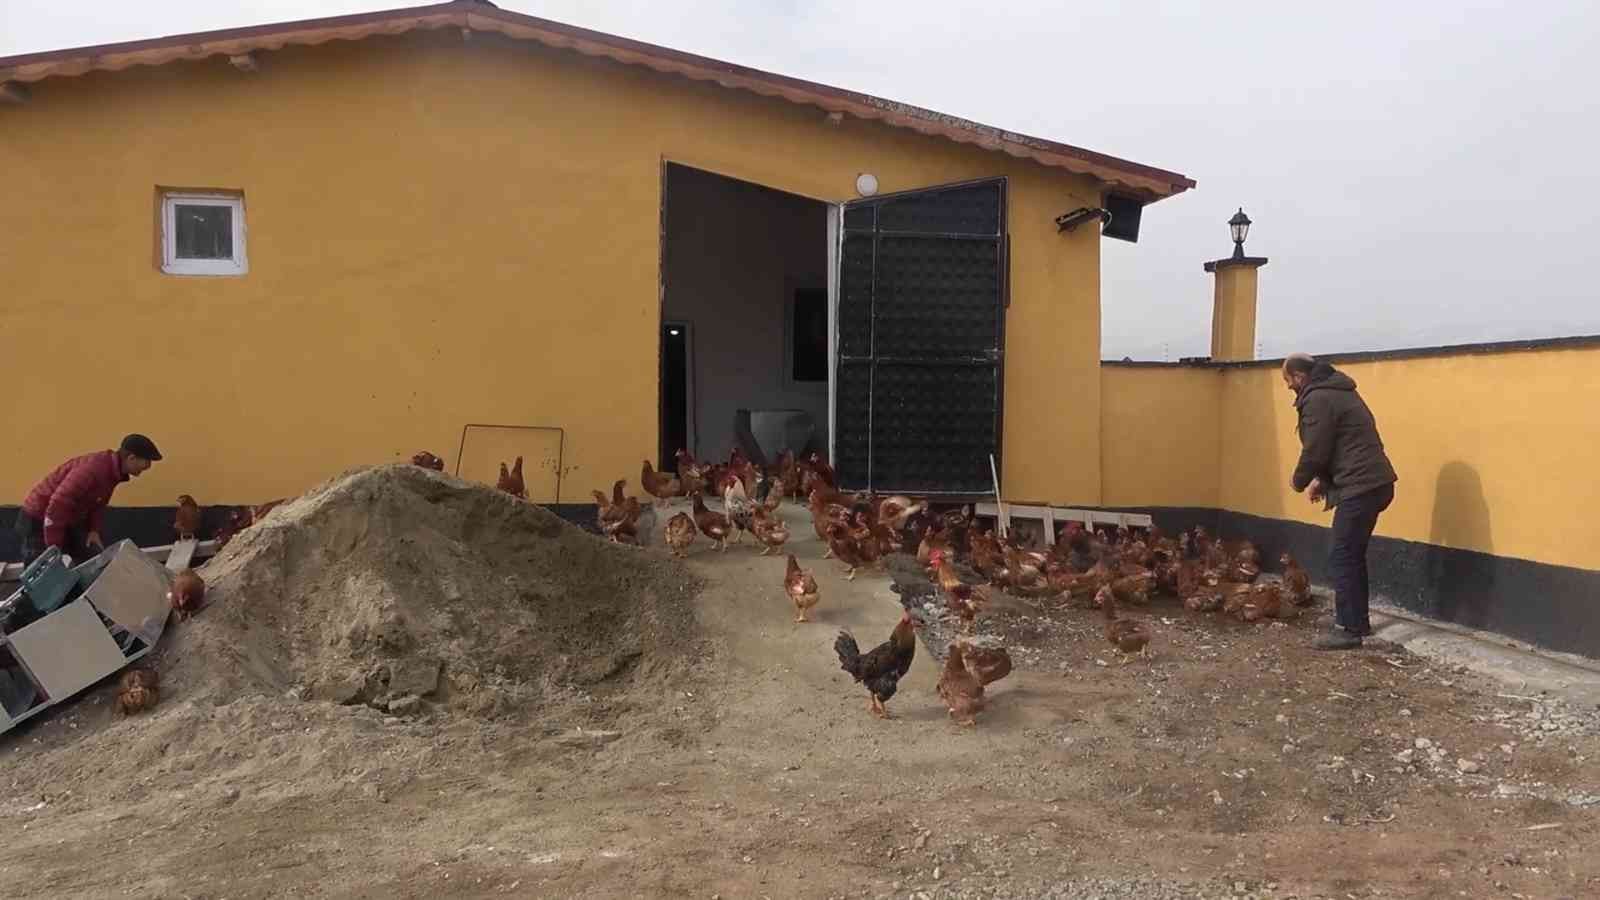 Yoğun talep üzerine tavuk çiftliği kurdu, şimdi paraya para demiyor #kirikkale